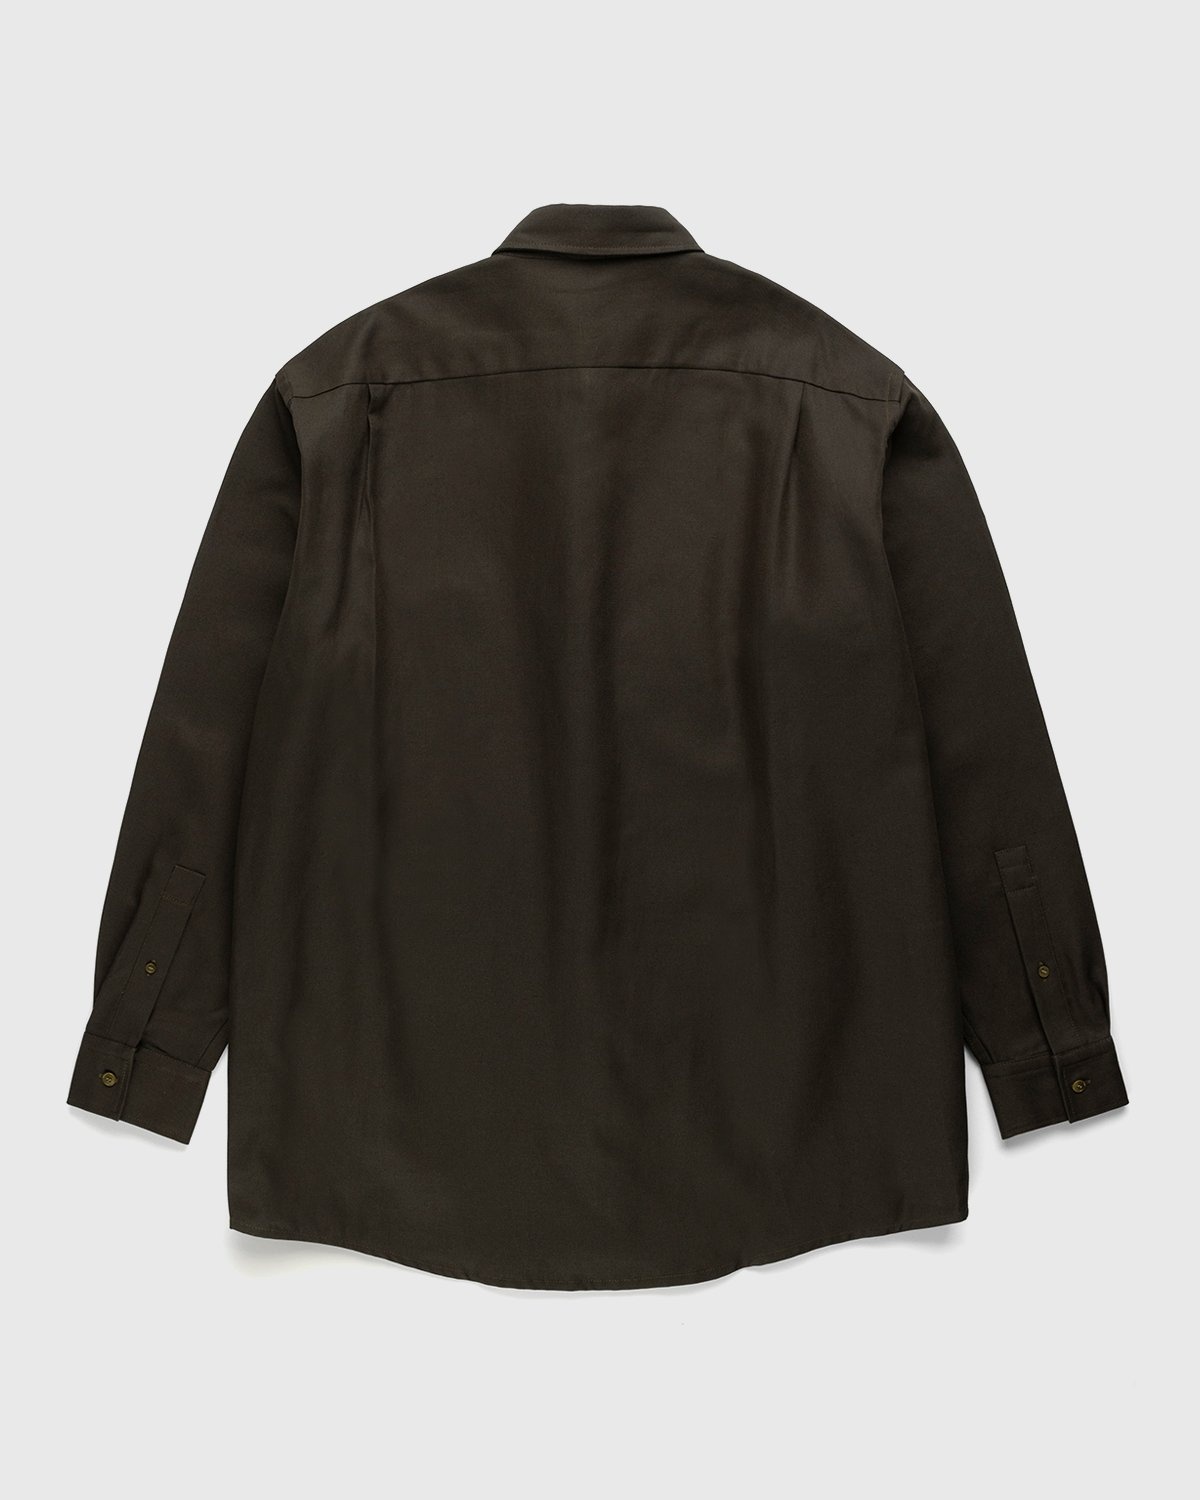 Acne Studios – Linen Blend Button-Up Shirt Dark Olive - Longsleeve Shirts - Green - Image 2